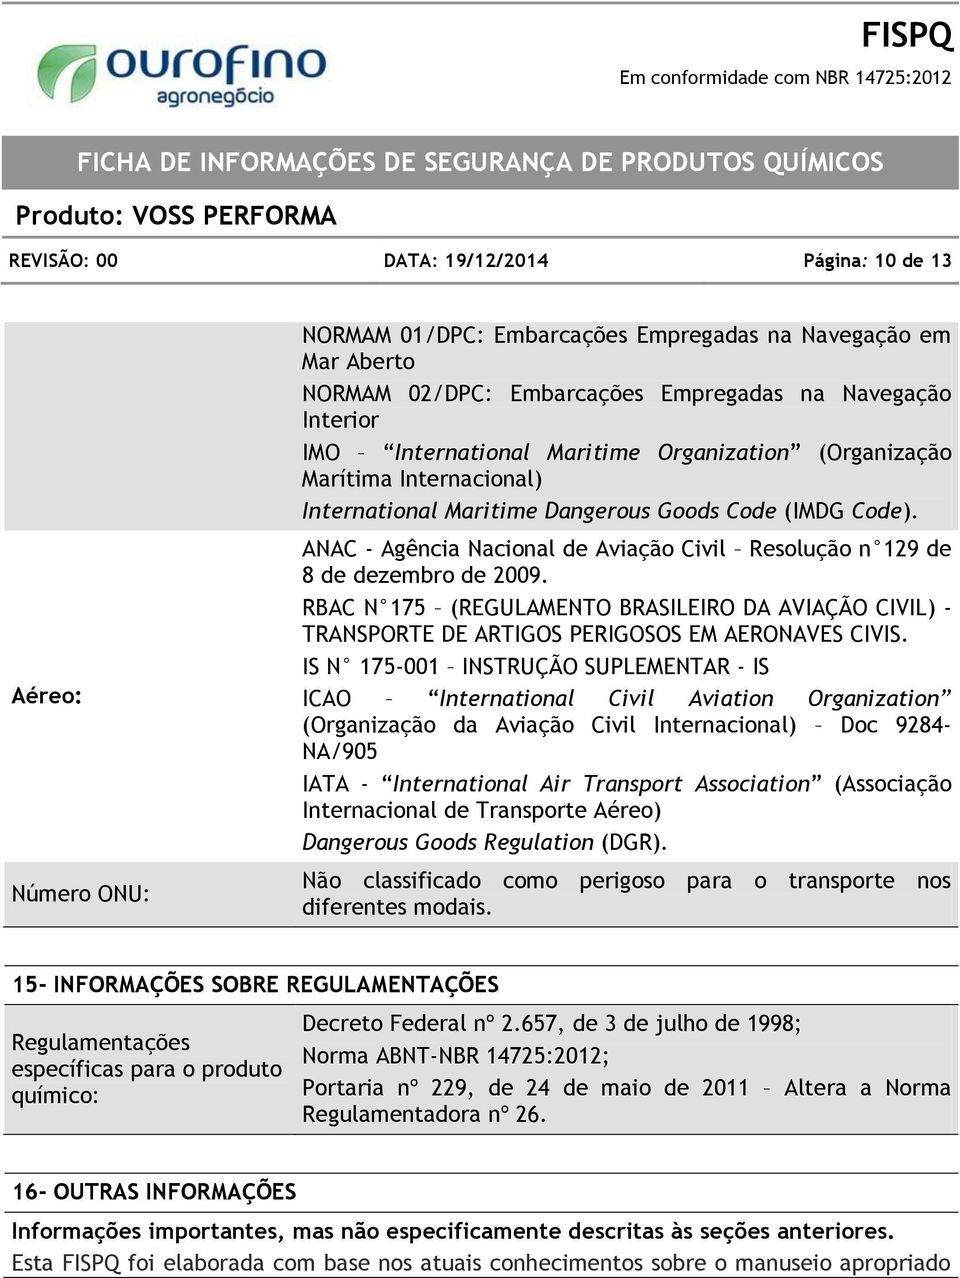 ANAC - Agência Nacional de Aviação Civil Resolução n 129 de 8 de dezembro de 2009. RBAC N 175 (REGULAMENTO BRASILEIRO DA AVIAÇÃO CIVIL) - TRANSPORTE DE ARTIGOS PERIGOSOS EM AERONAVES CIVIS.